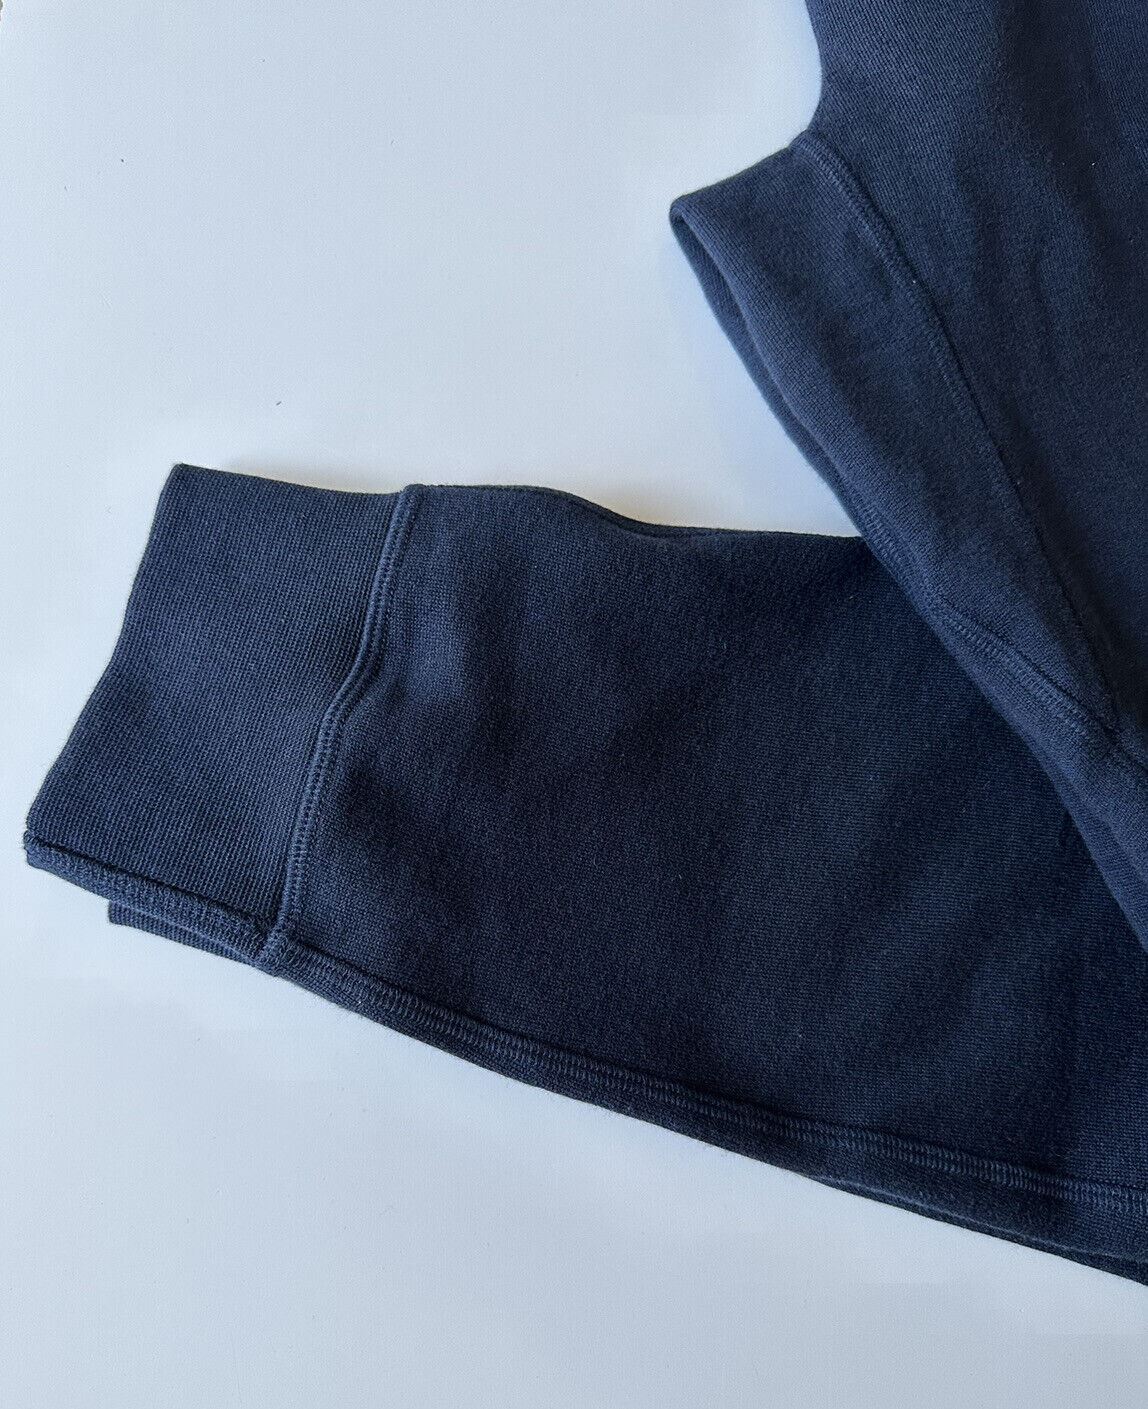 Повседневные синие брюки Ralph Lauren Purple Label, большие размеры (размер 34 дюйма), NWT, 395 долларов США. 